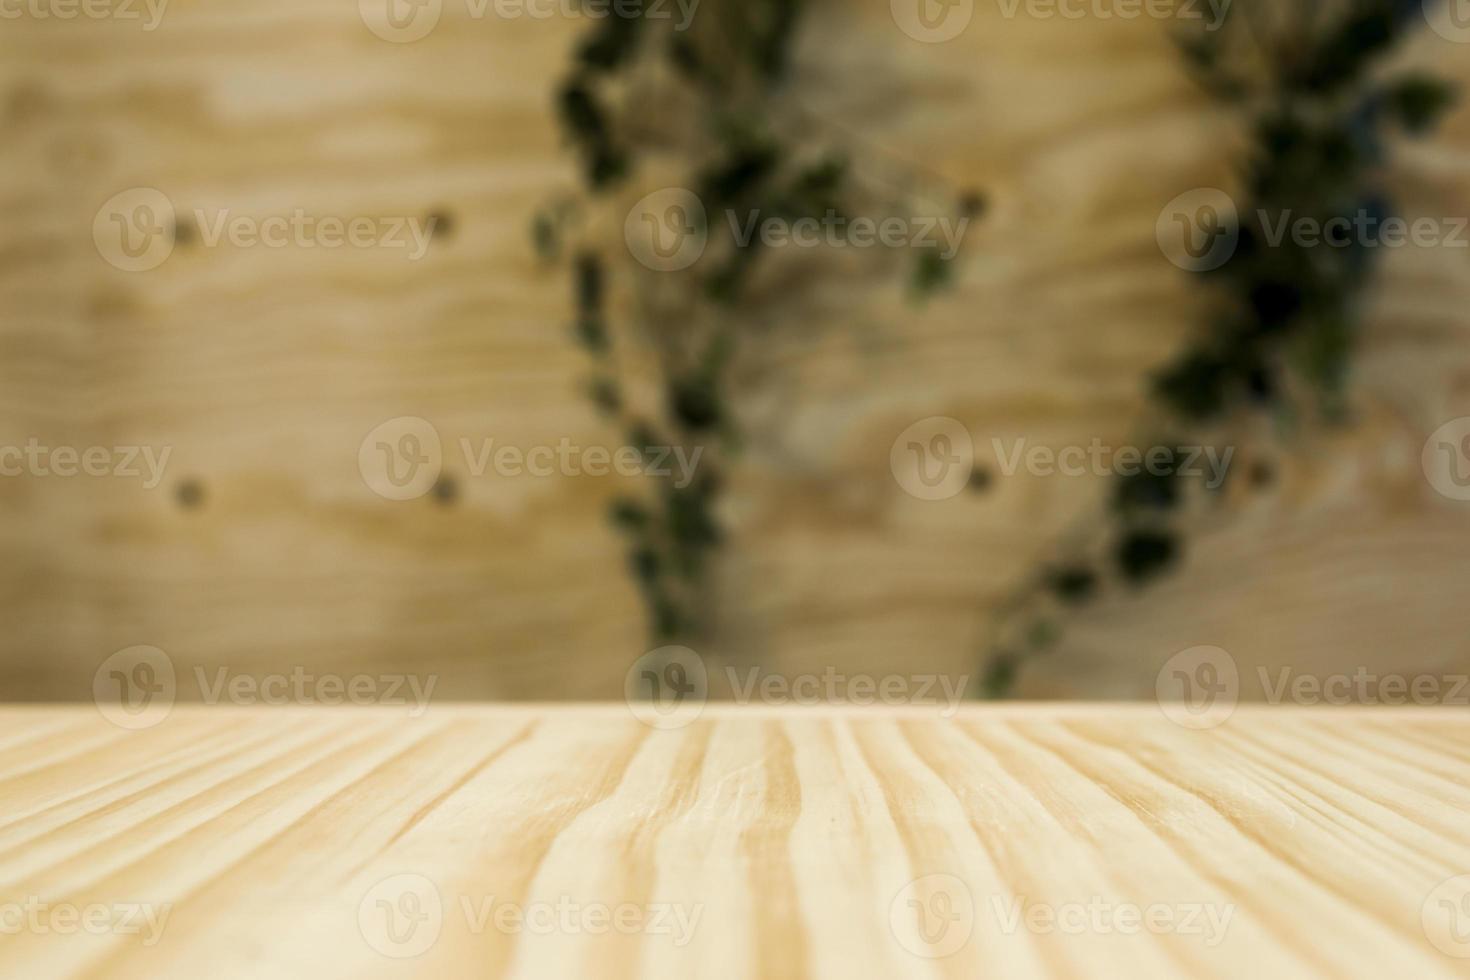 textura de madeira. conceito de foto bonita de alta qualidade e resolução